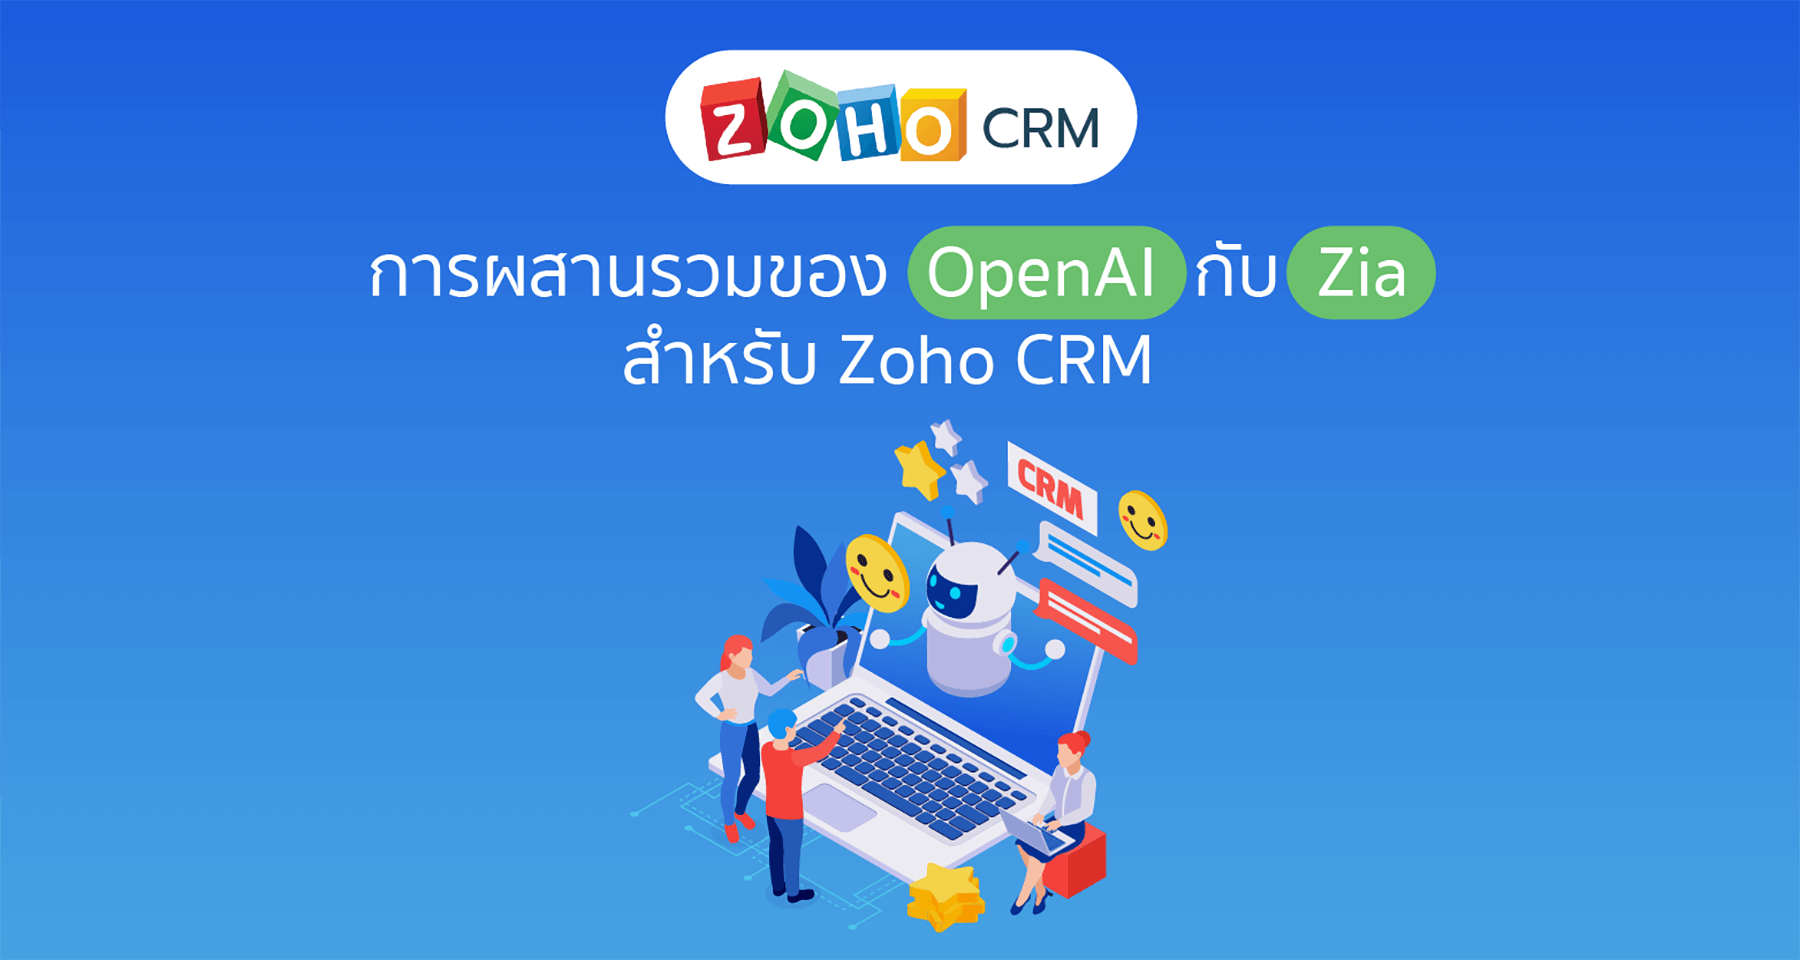 การผสานรวมของ OpenAI กับ Zia เพื่อปรับปรุงประสิทธิภาพของ Zoho CRM